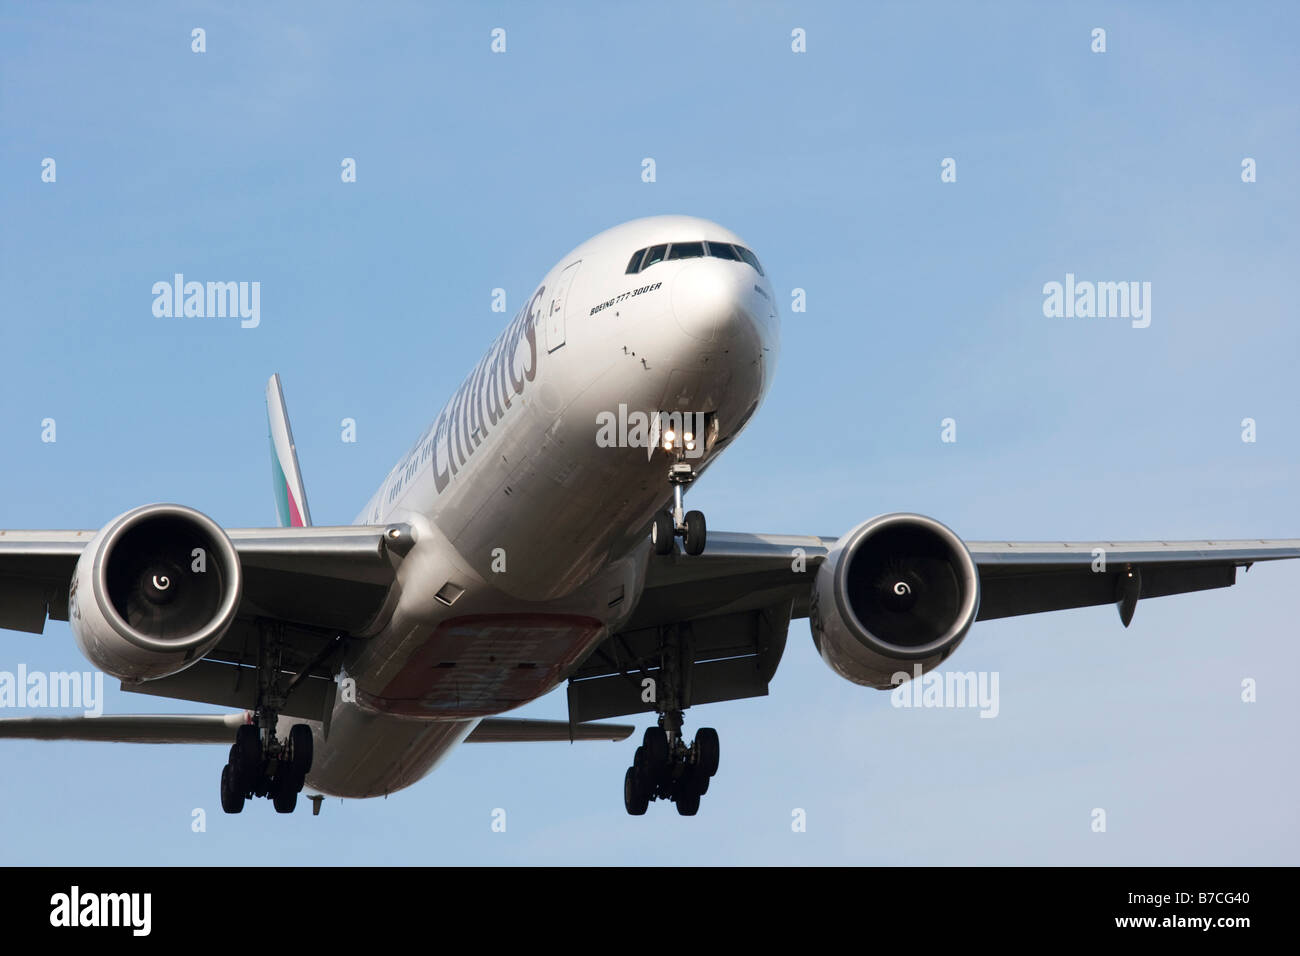 Emirate-Verkehrsflugzeug Boeing 777 300 im Endanflug zu landen Stockfoto